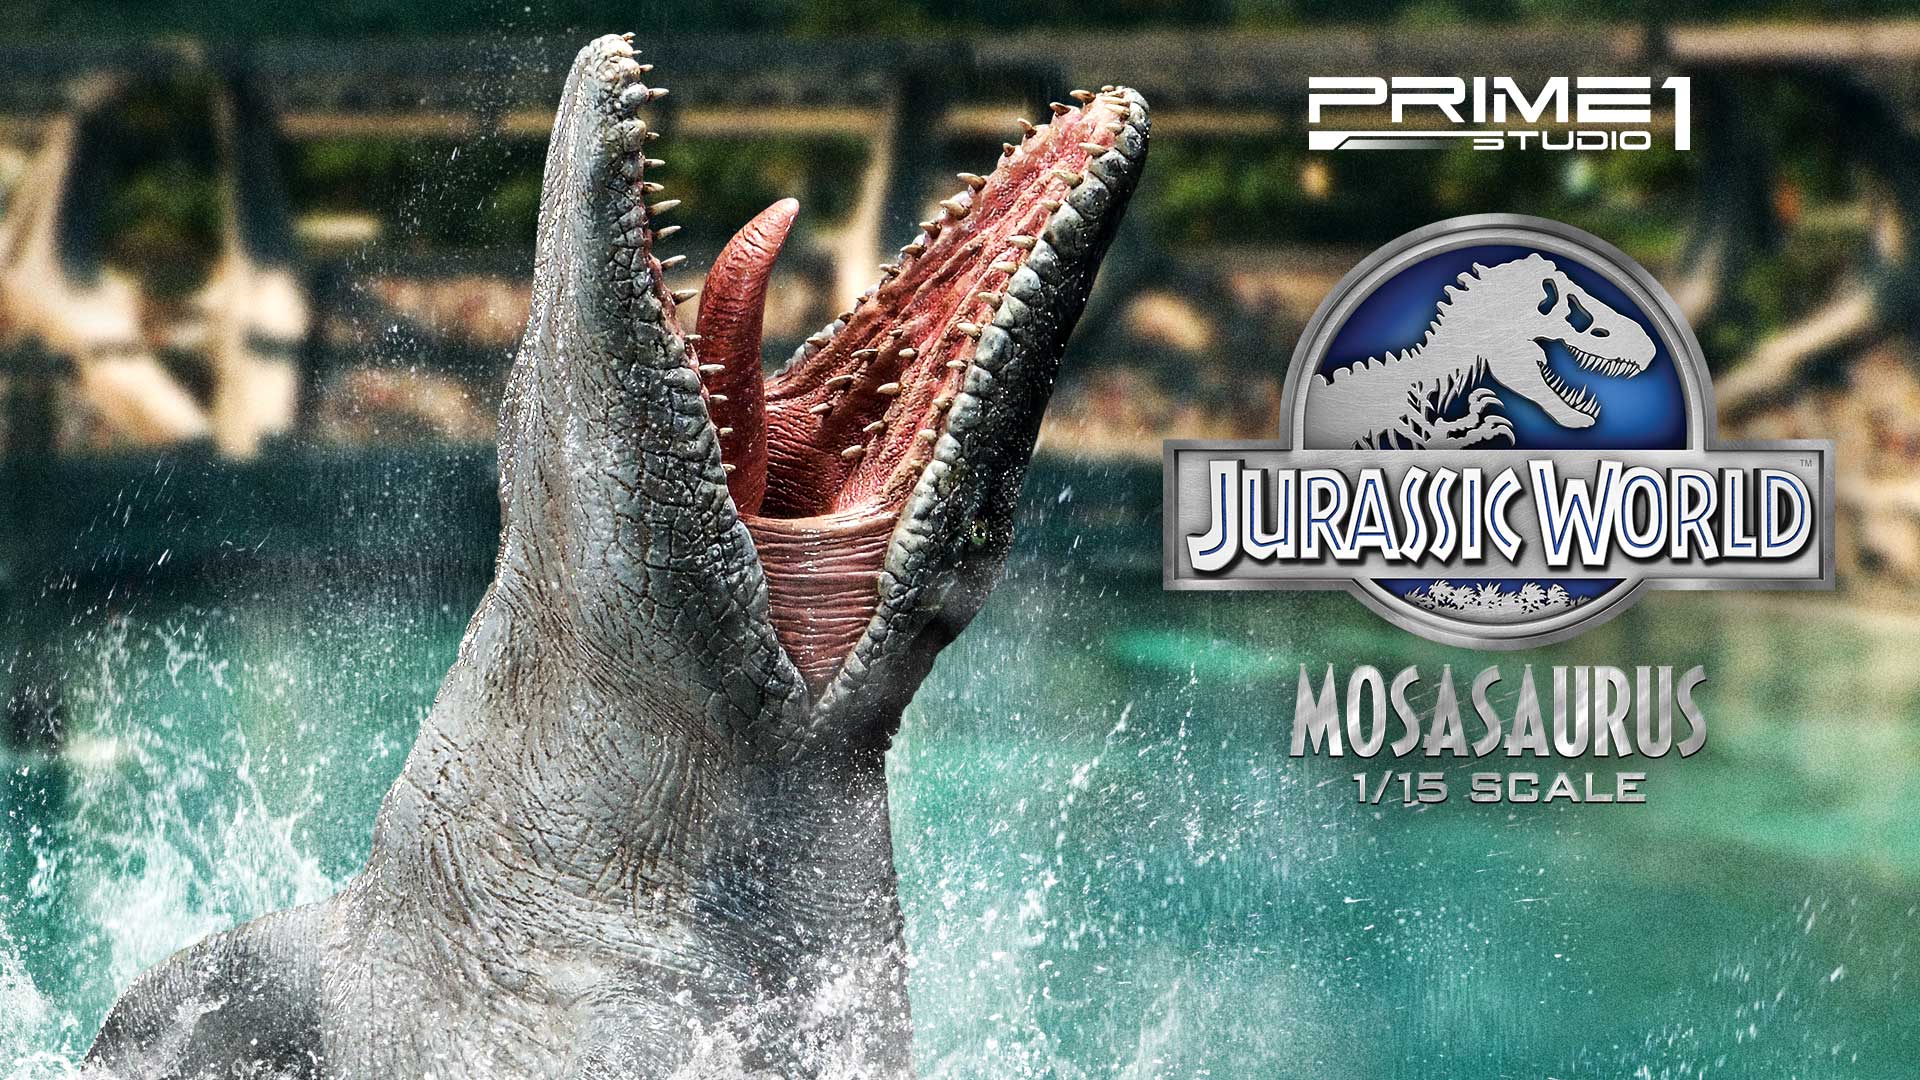 プレスリリース ジュラシック ワールドで絶大な存在感を放った人気恐竜 モササウルス が横幅 90cmオーバー の迫力サイズで登場 Press 毎日新聞